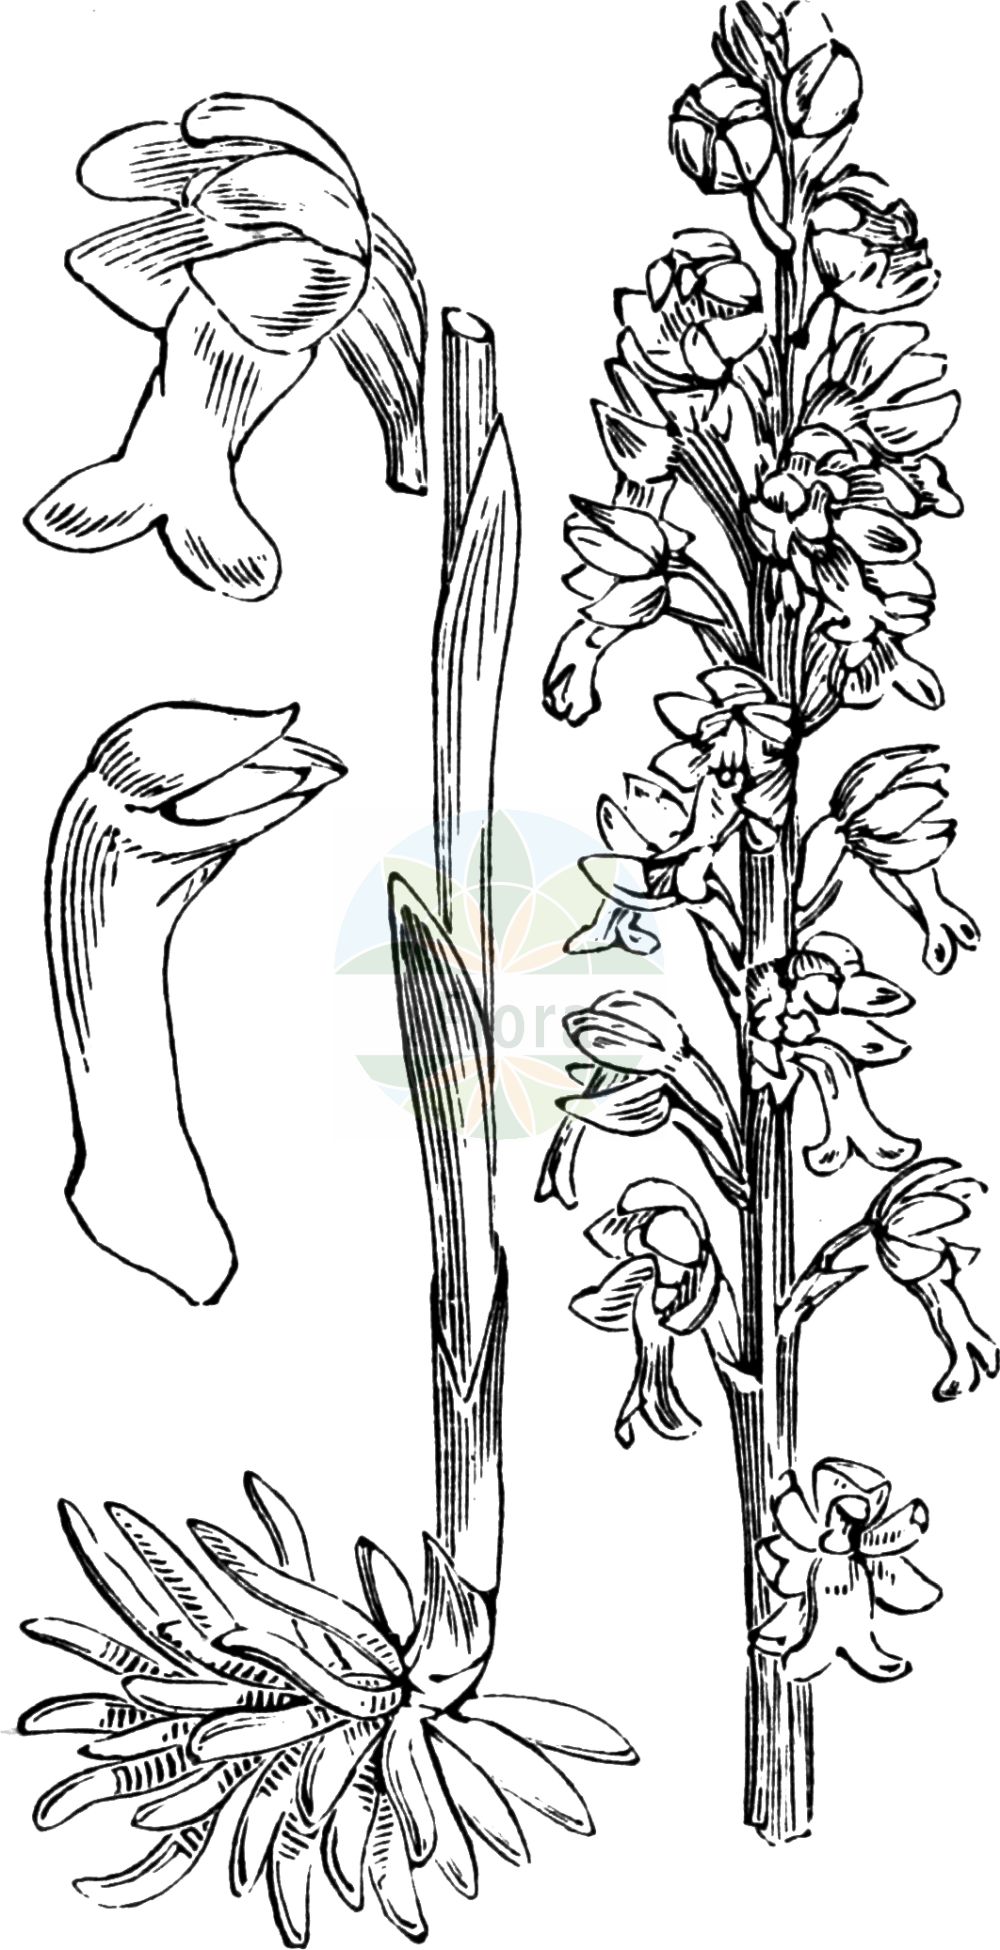 Historische Abbildung von Neottia nidus-avis (Vogelnestwurz - Bird's-nest Orchid). Das Bild zeigt Blatt, Bluete, Frucht und Same. ---- Historical Drawing of Neottia nidus-avis (Vogelnestwurz - Bird's-nest Orchid). The image is showing leaf, flower, fruit and seed.(Neottia nidus-avis,Vogelnestwurz,Bird's-nest Orchid,Distomaea nidus-avis,Epipactis nidus-avis,Helleborine nidus-avis,Helleborine succulenta,Listera nidus-avis,Malaxis nidus-avis,Neottia macrostelis,Neottia nidus-avis,Neottia orobanchoidea,Neottia squamosa,Neottidium nidus-avis,Ophrys nidus-avis,Serapias nidus-avis,Vogelnestwurz,Vogel-Nestwurz,Bird's-nest Orchid,Mycoheterotrophic Orchid,Neottia,Nestwurz,Nest Orchid,Orchidaceae,Knabenkrautgewächse,Orchid family,Blatt,Bluete,Frucht,Same,leaf,flower,fruit,seed,Fitch et al. (1880))